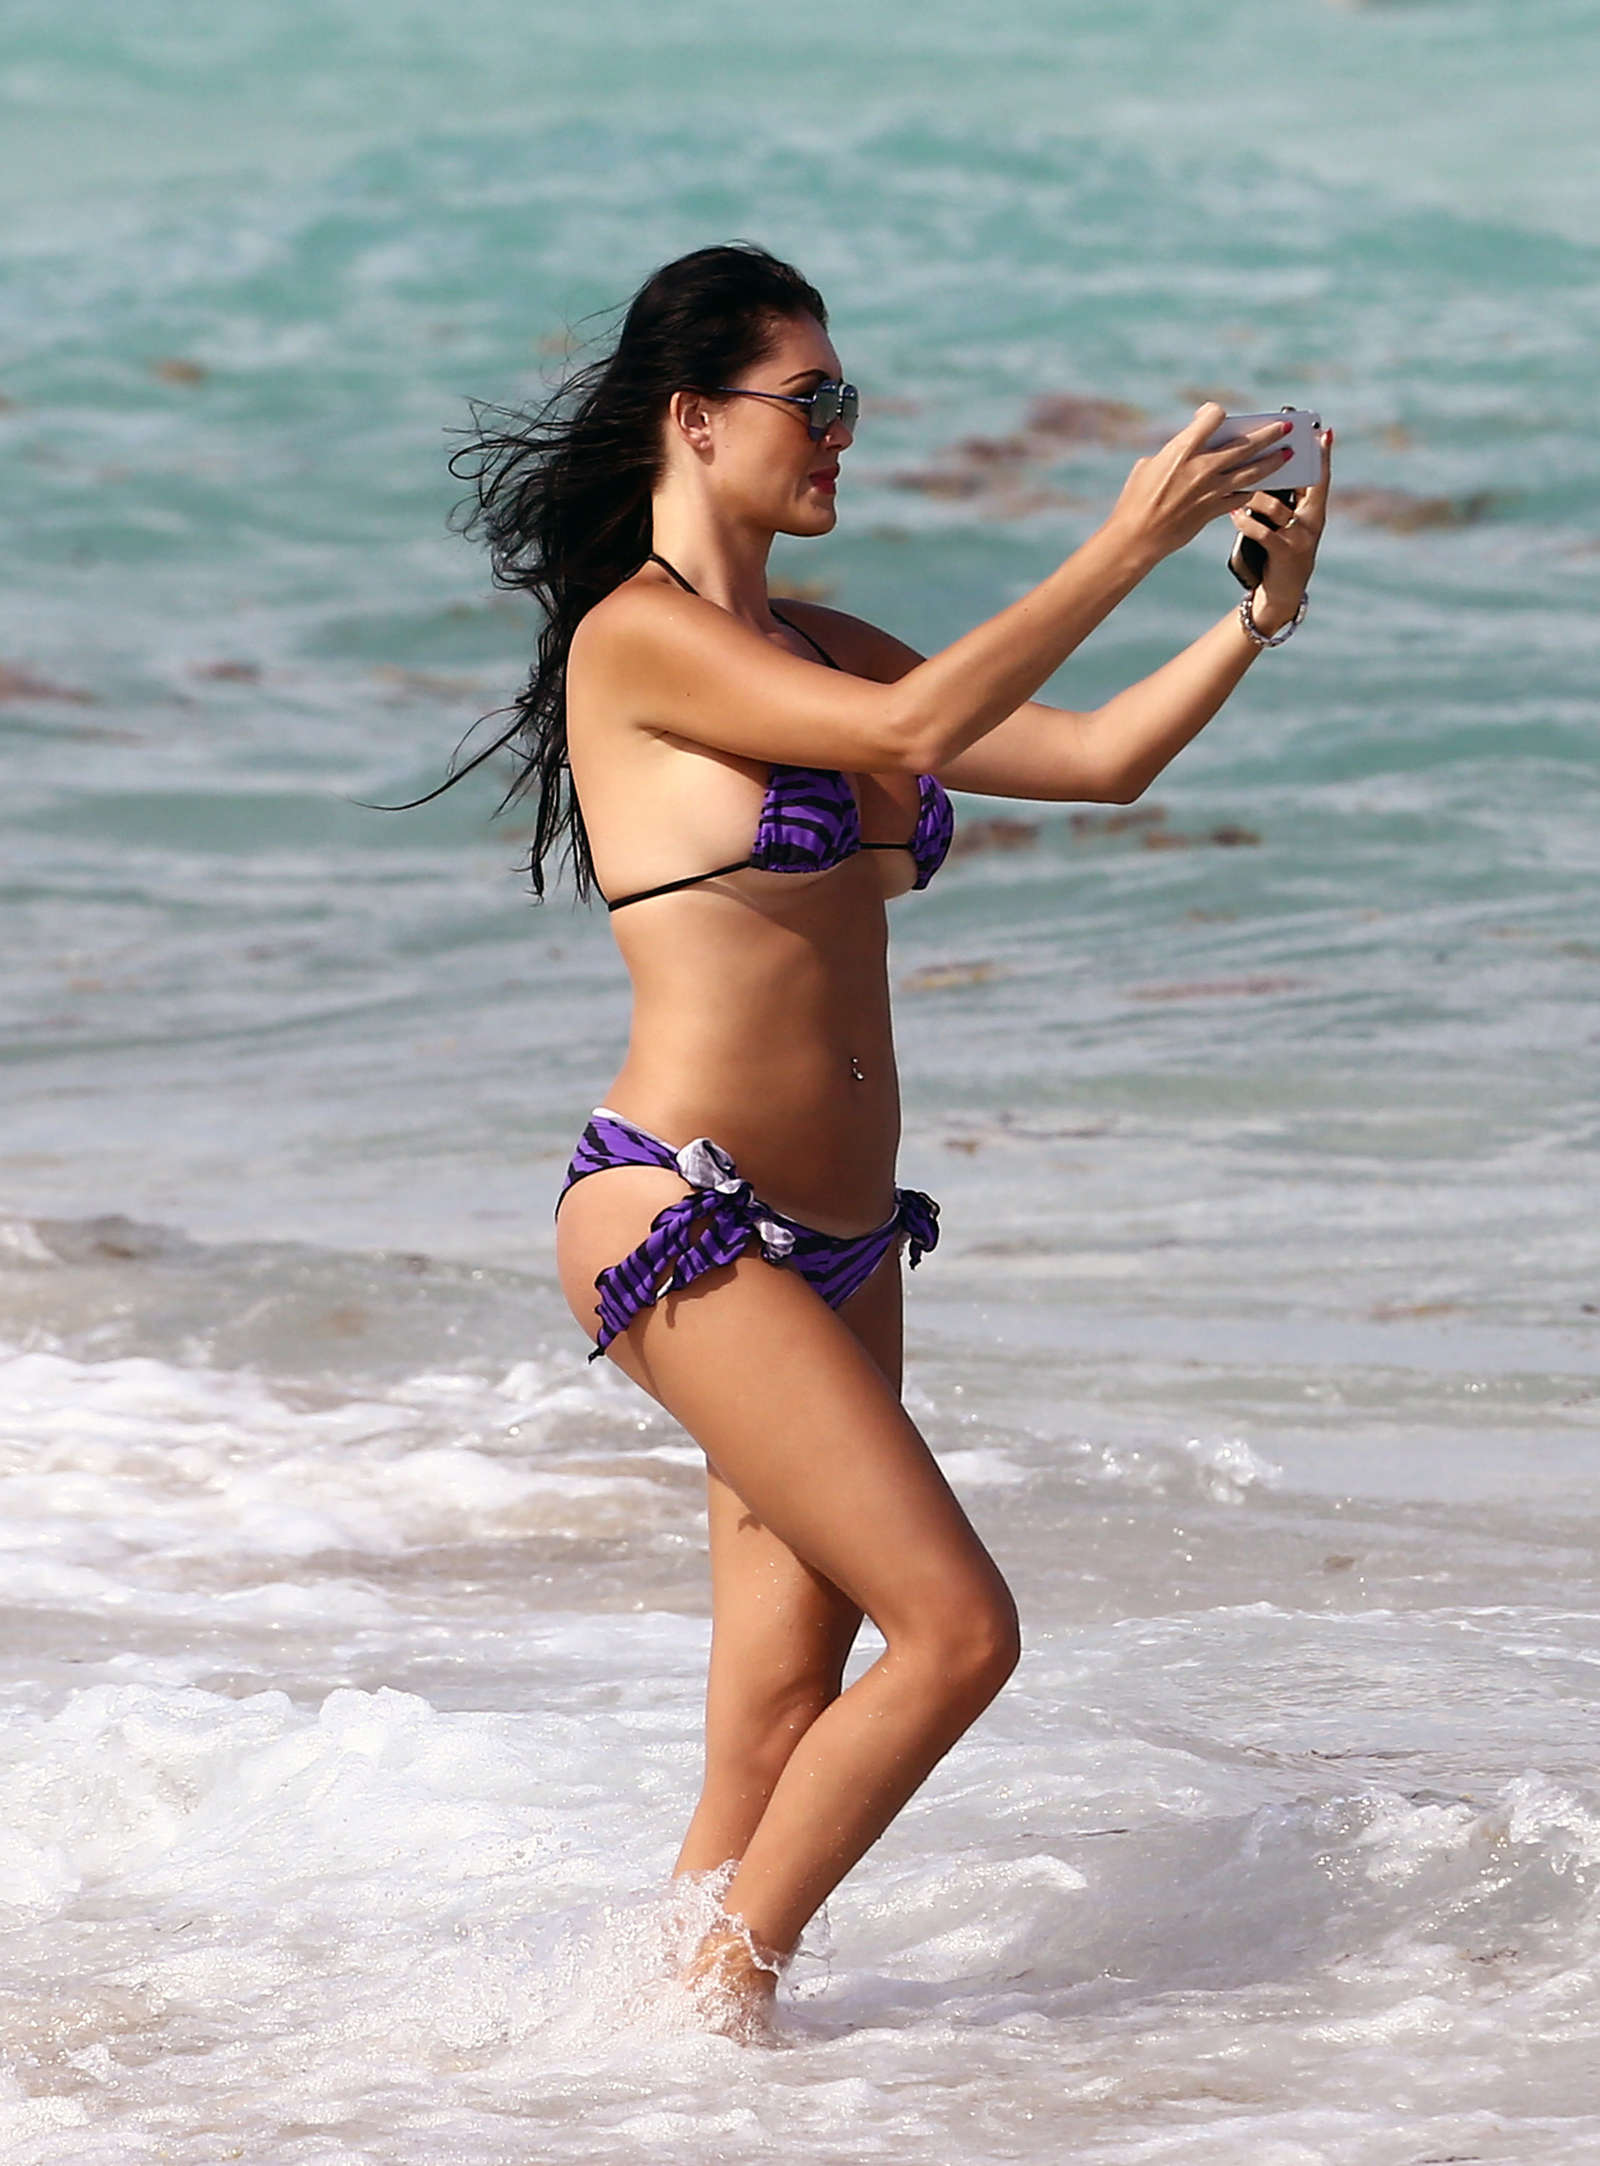 Karin Chiche in Bikini on the beach in Miami. 